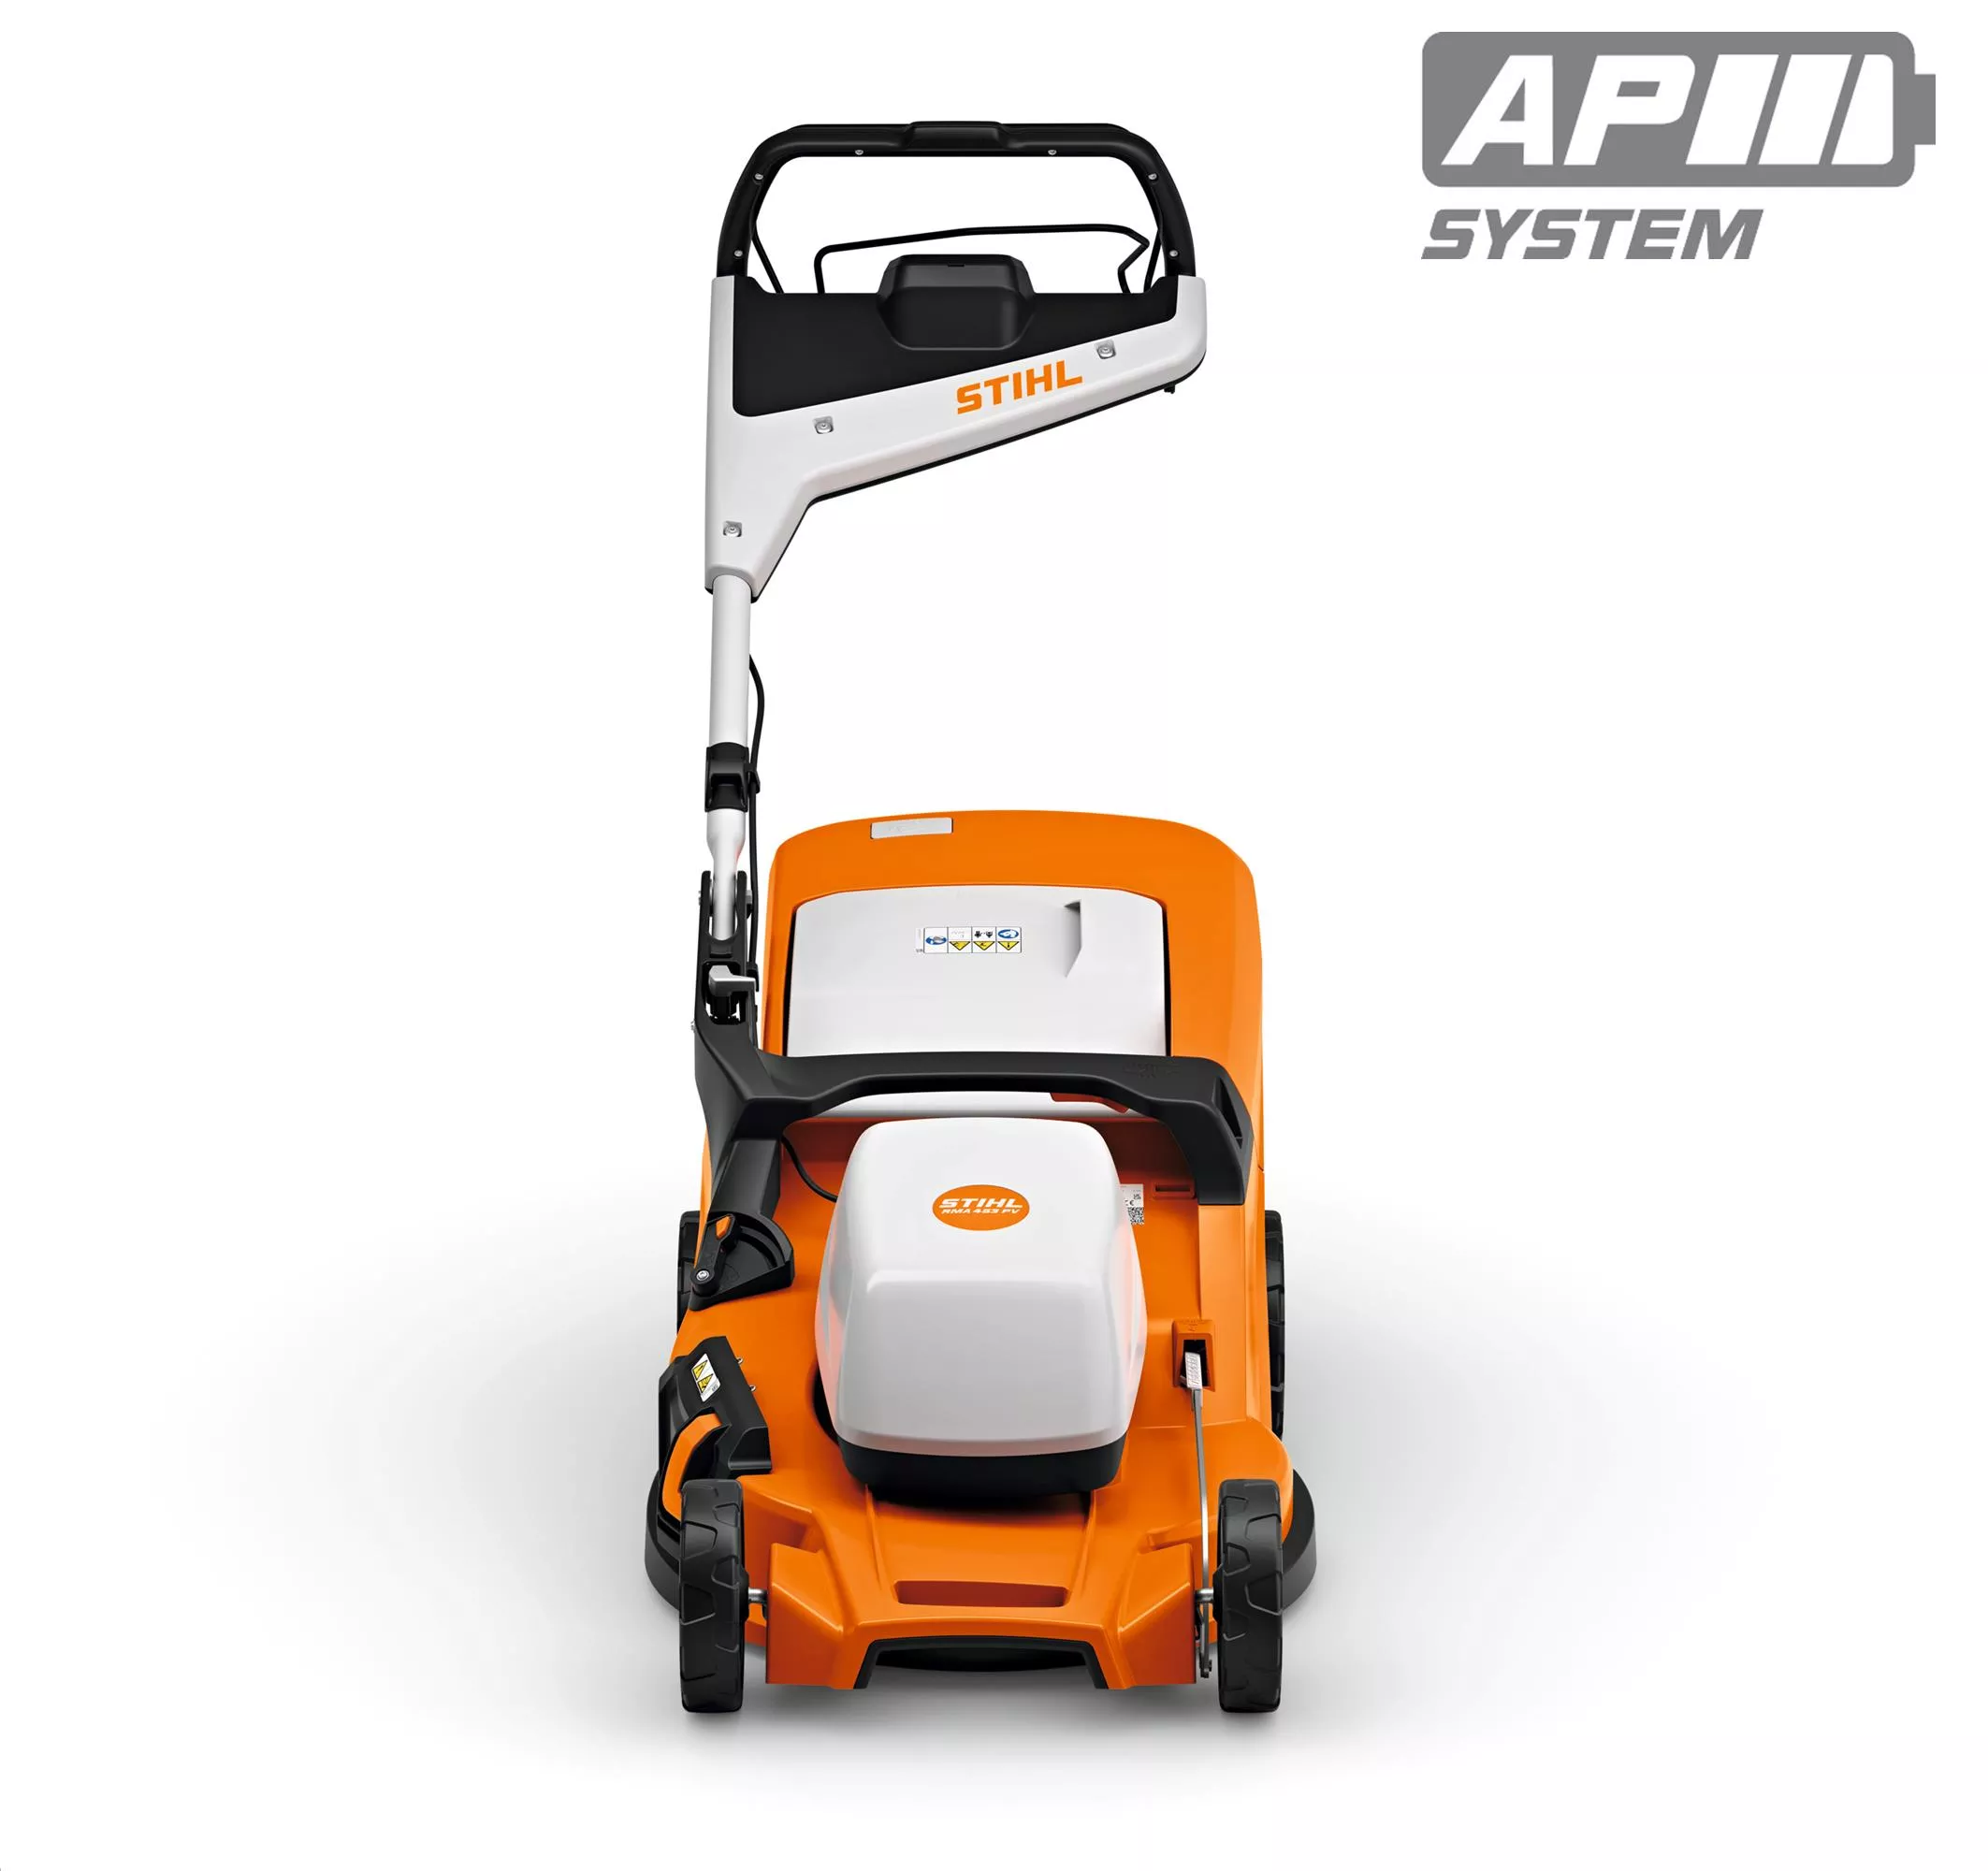 RMA 453 PV Cordless Lawn Mower - AP